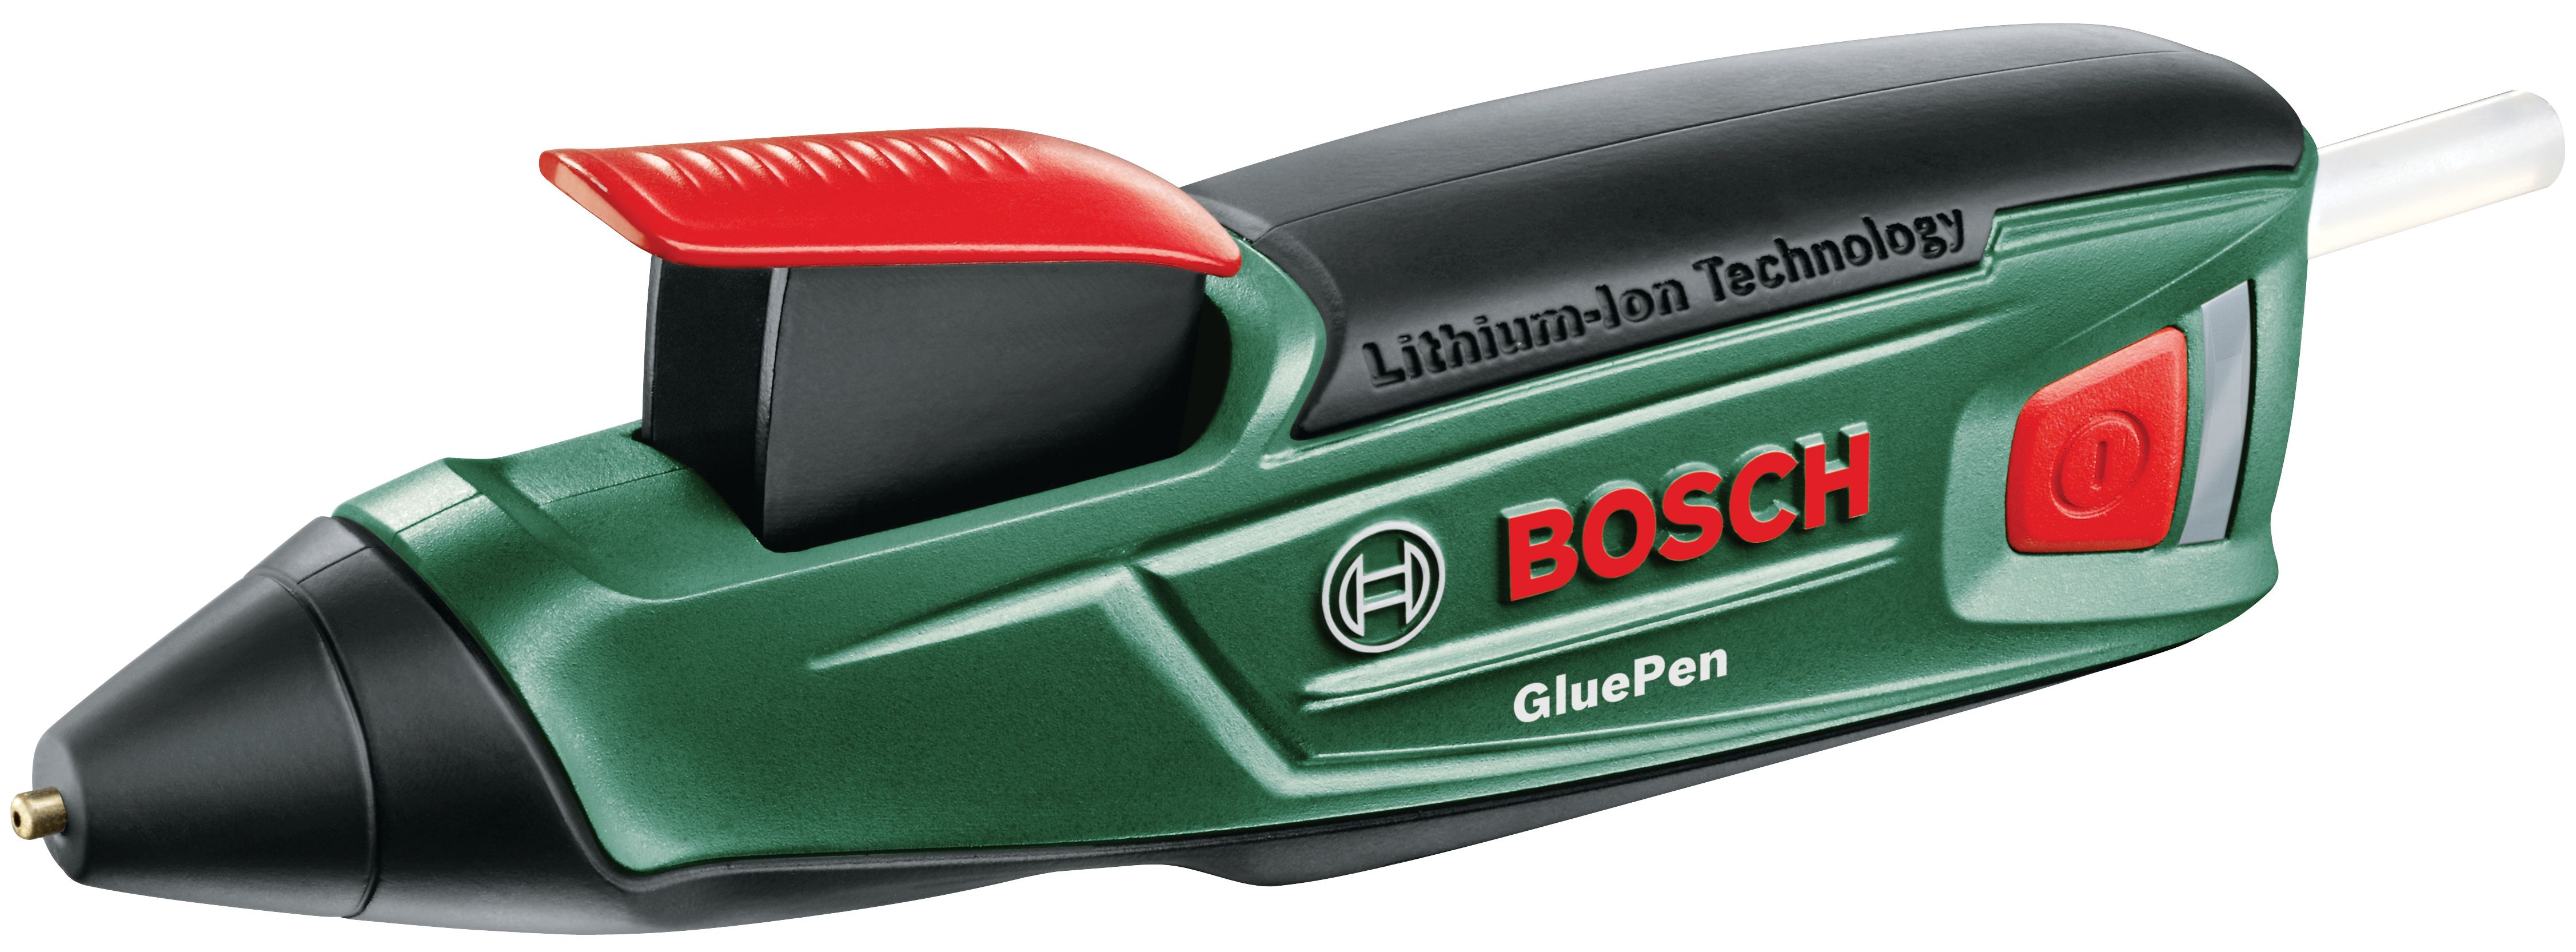 Image of Bosch 3.6V Cordless Li-Ion Hot Glue Pen